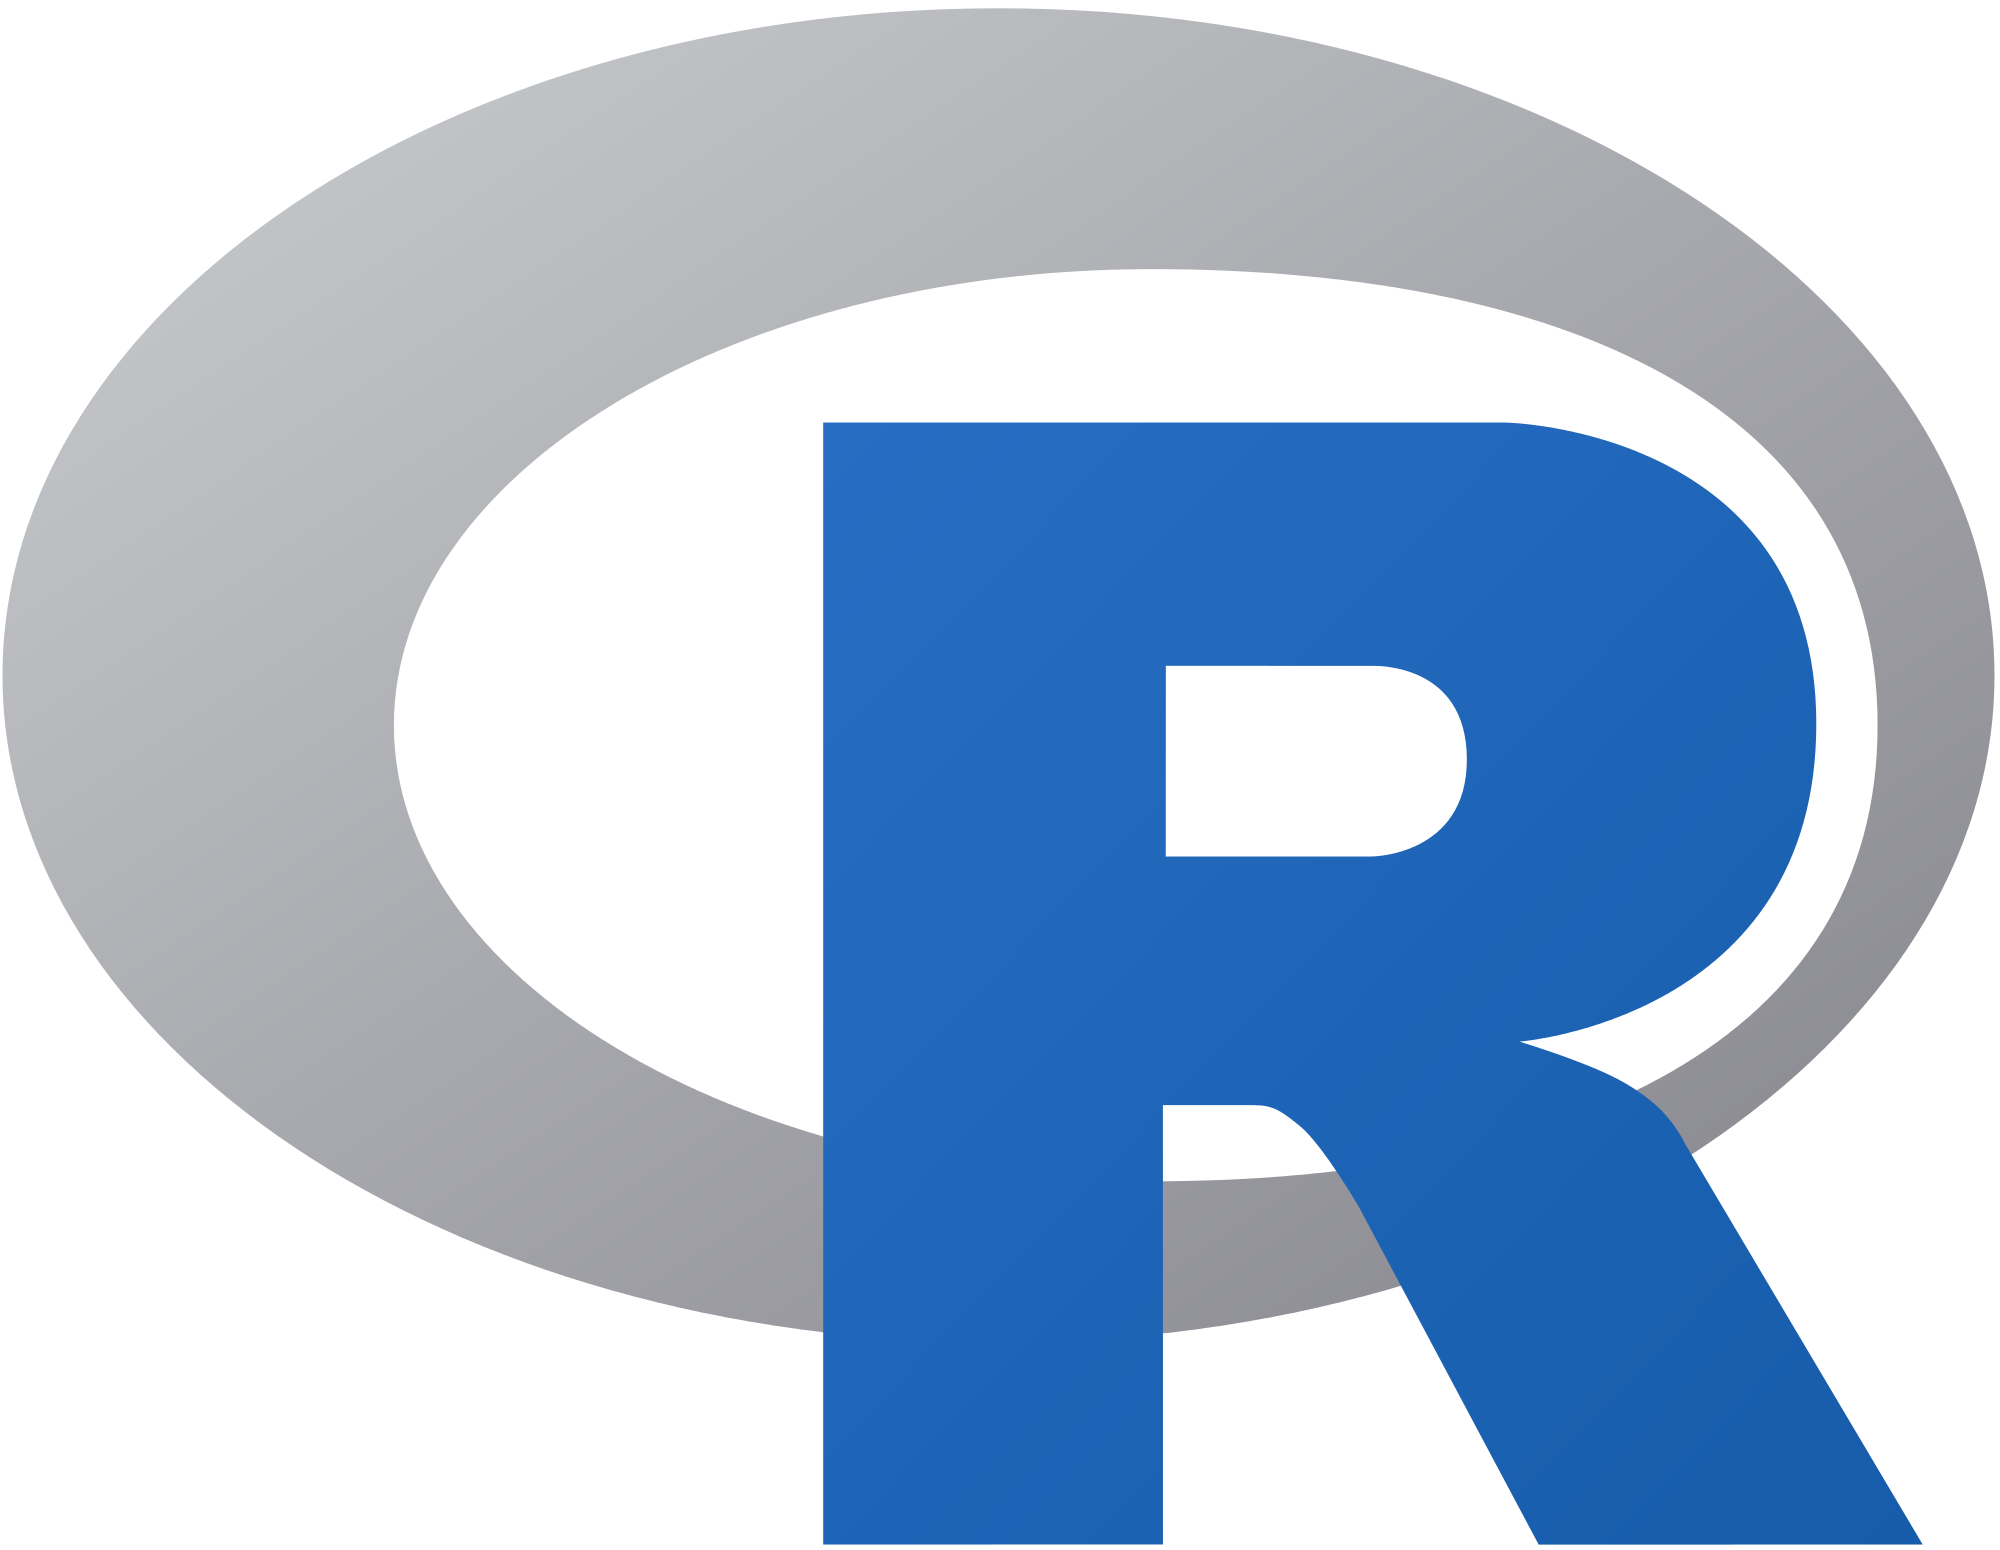 R_logo.png